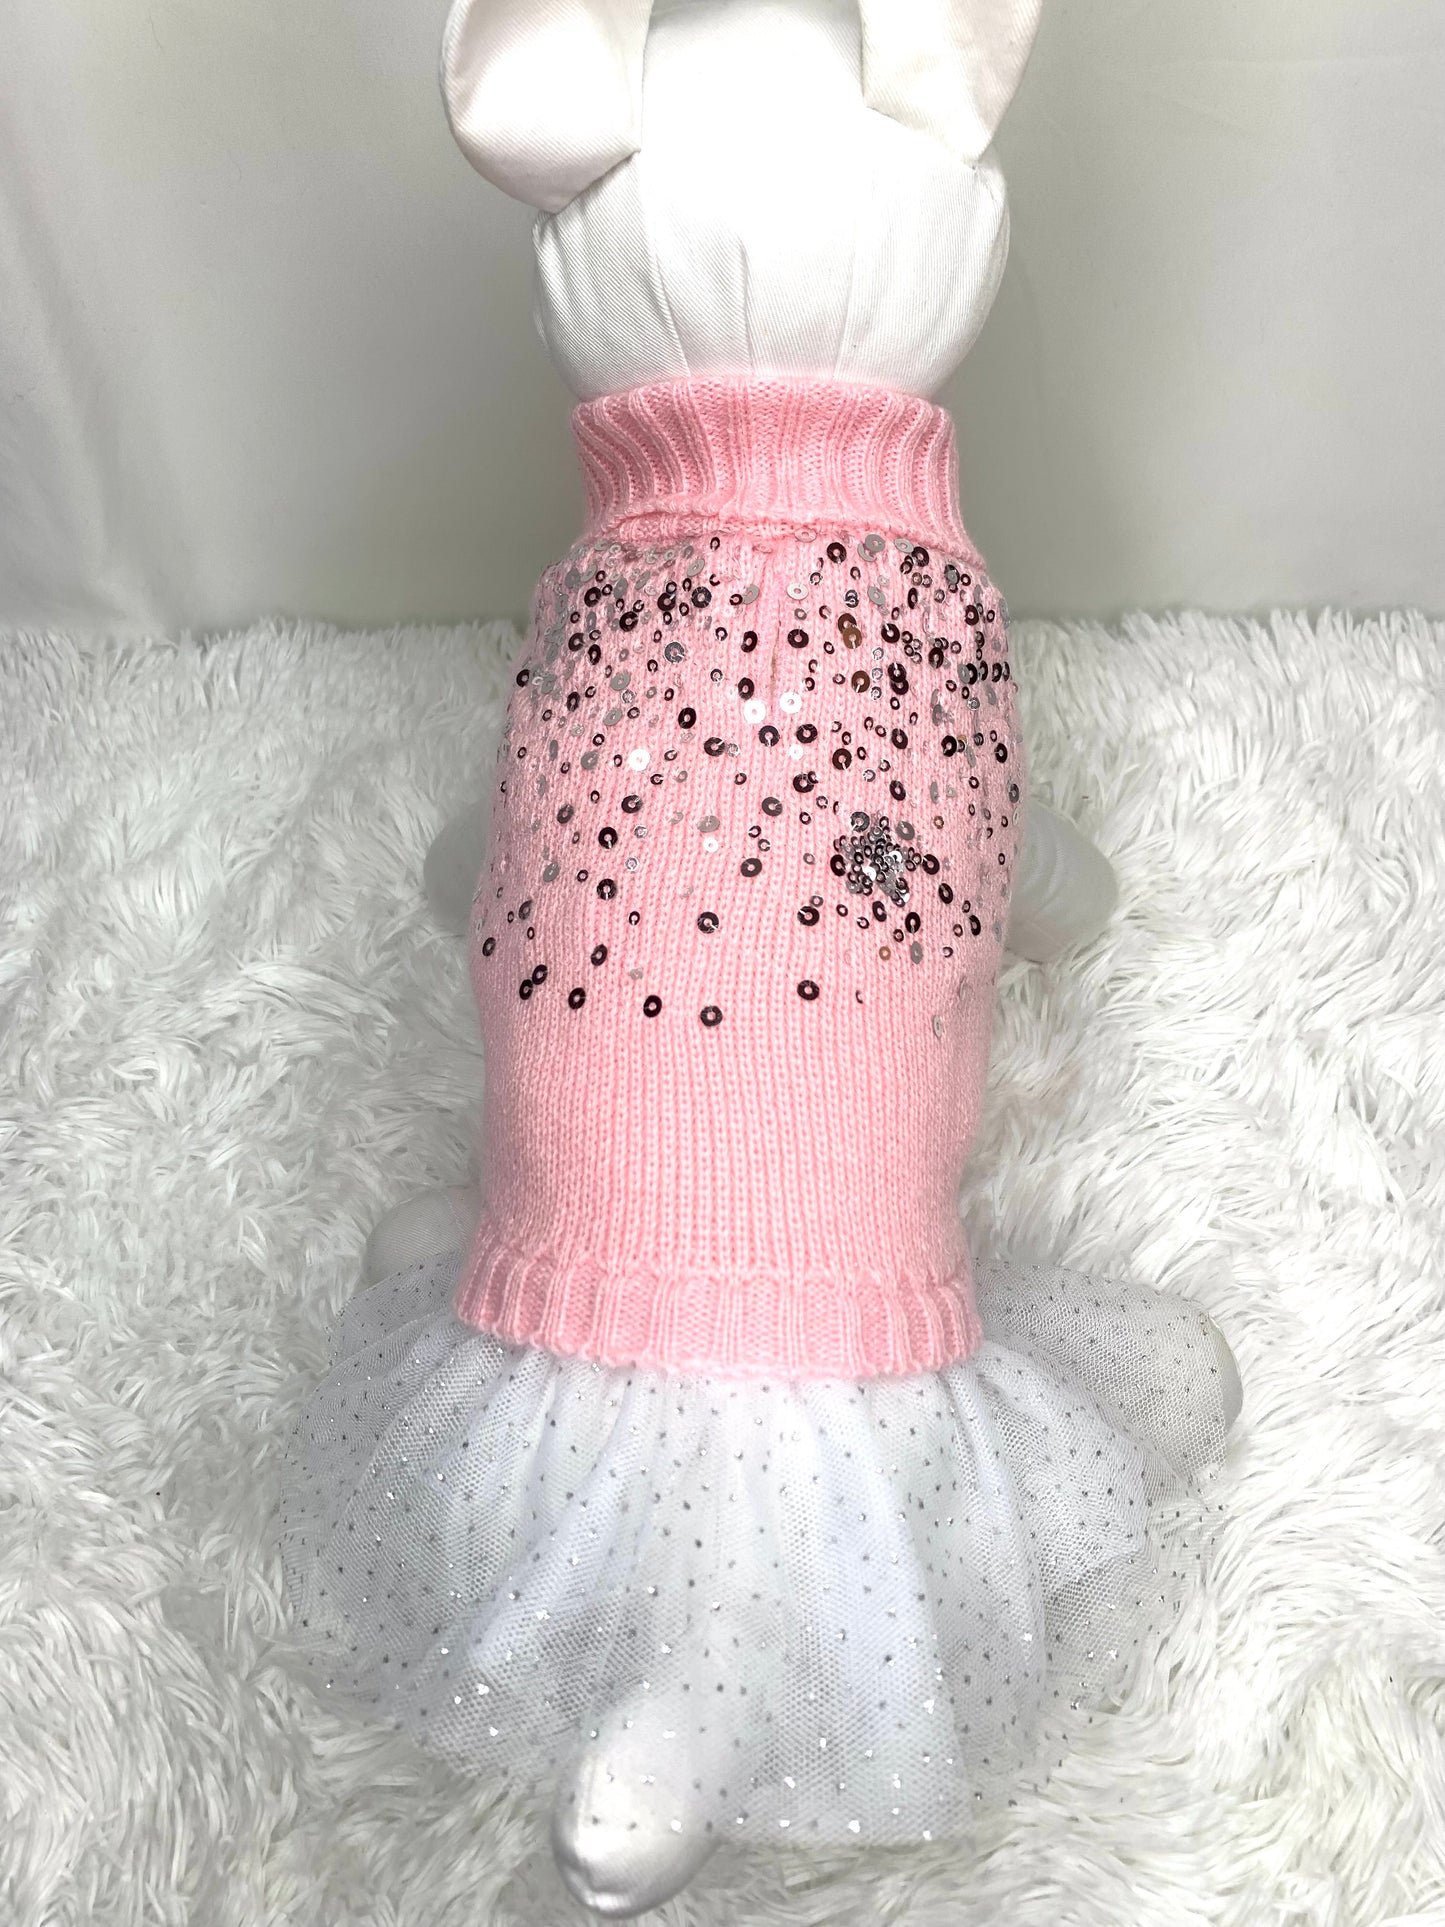 Sweater Dress   " Bling me pink tutu "